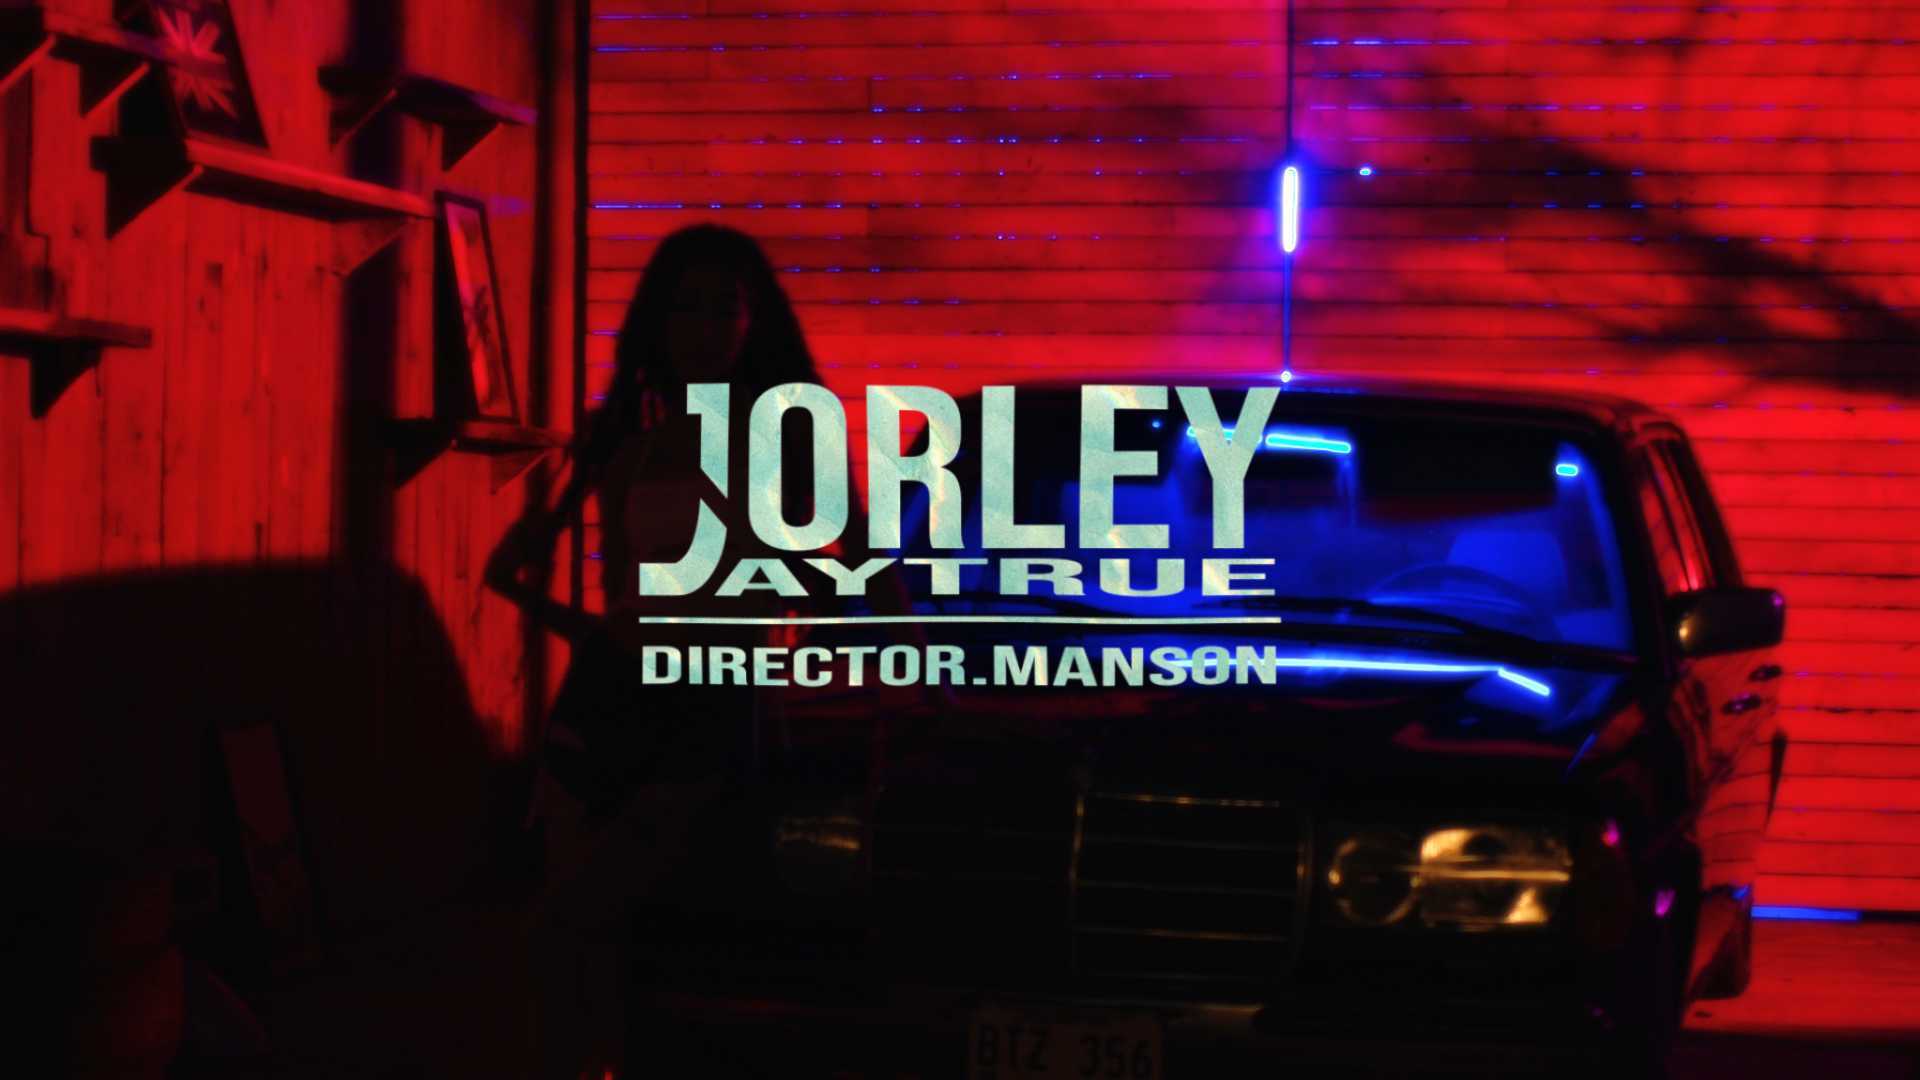 Jorley - Jaytrue (Dir.Manson)